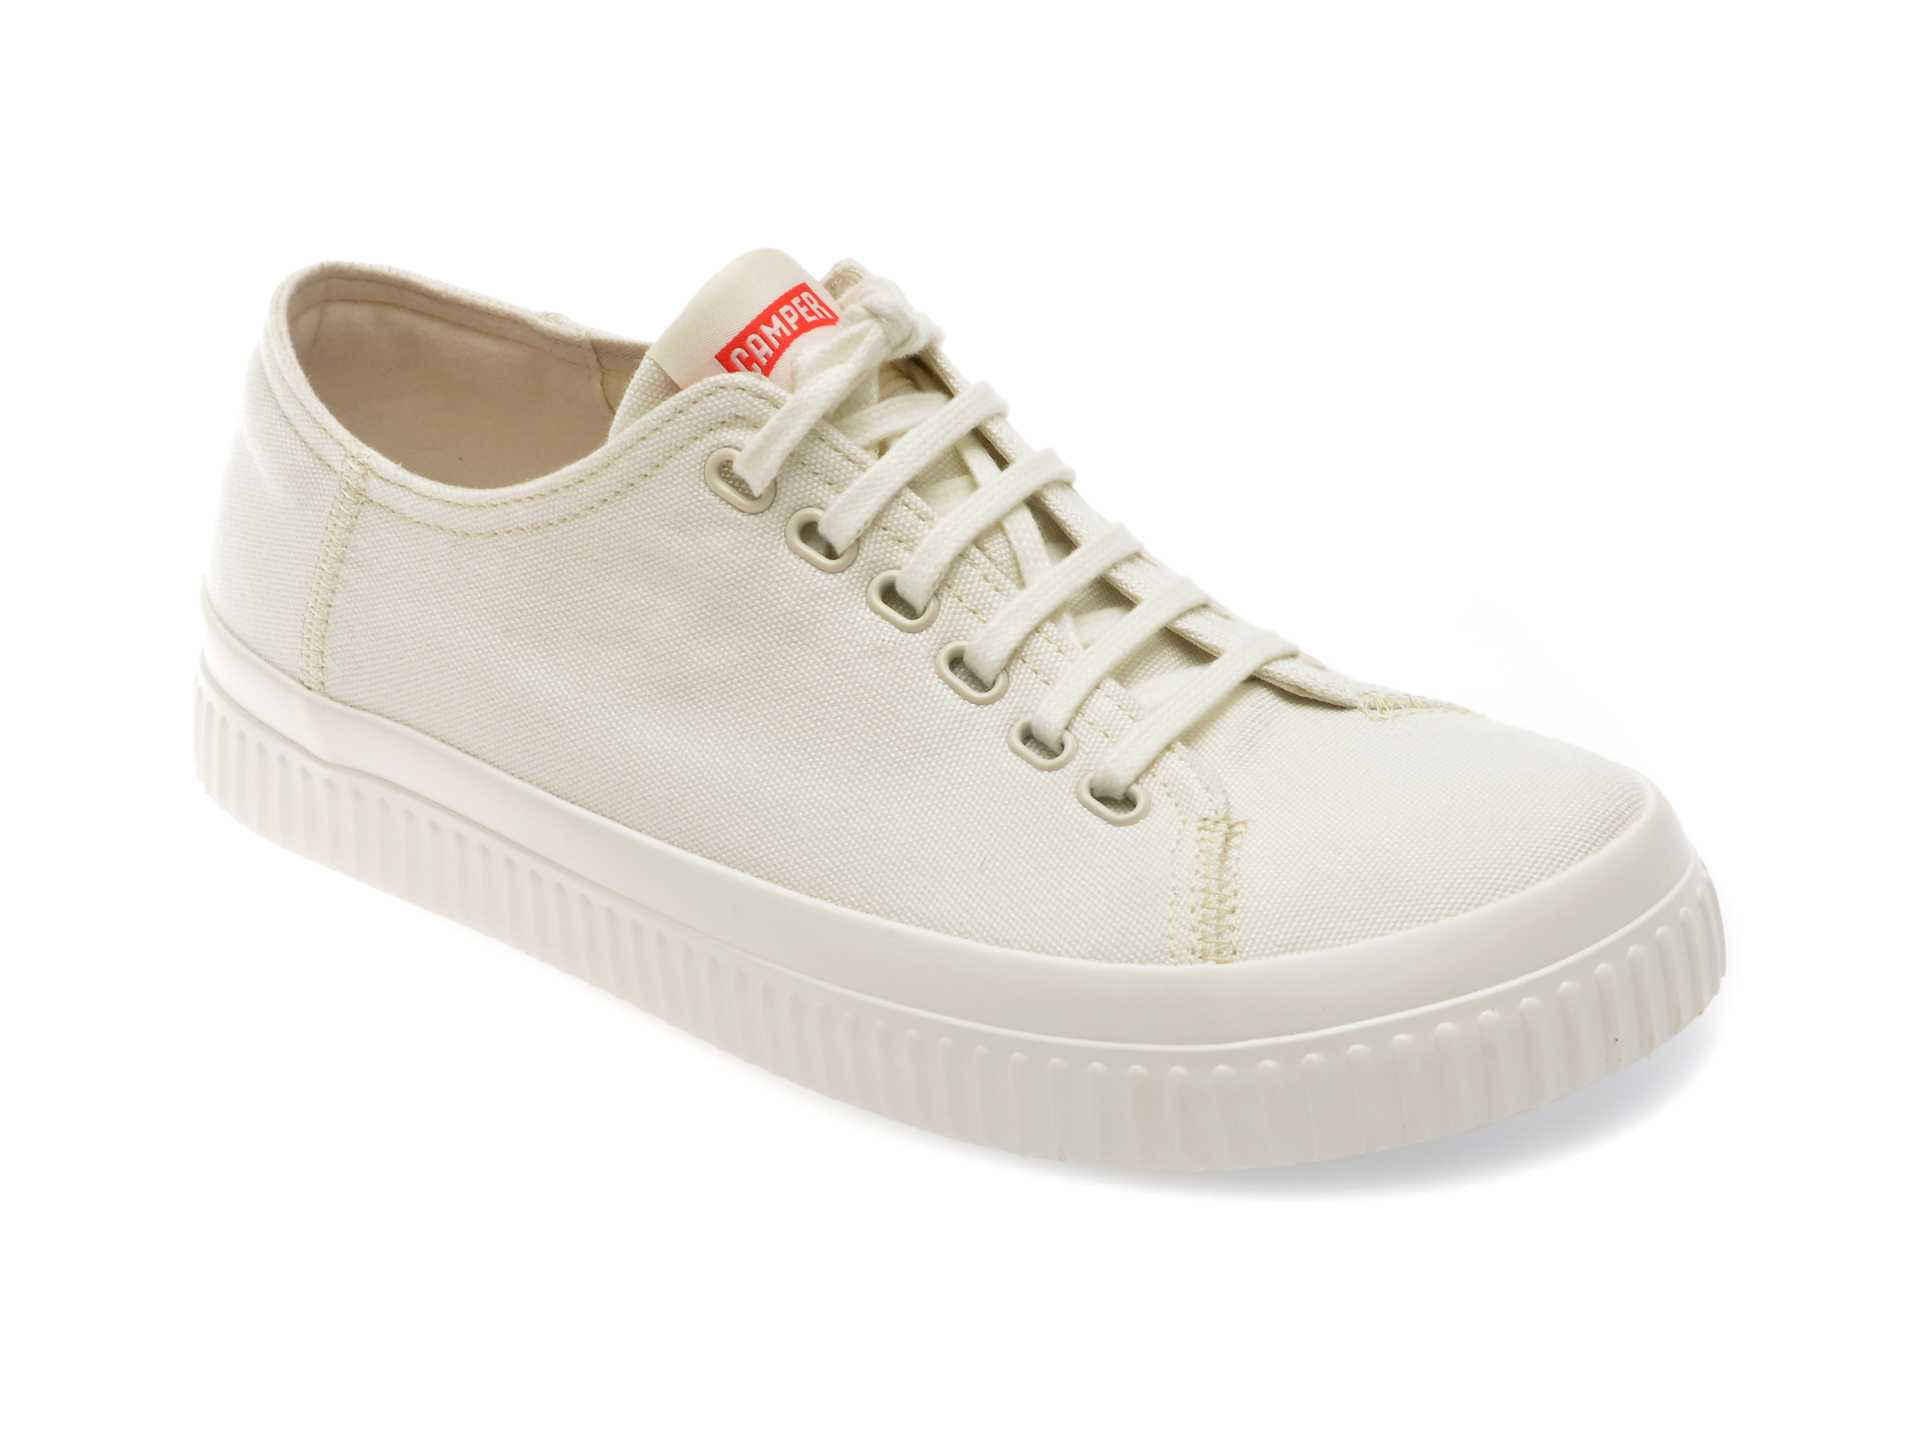 Pantofi casual CAMPER albi, K100933, din material textil